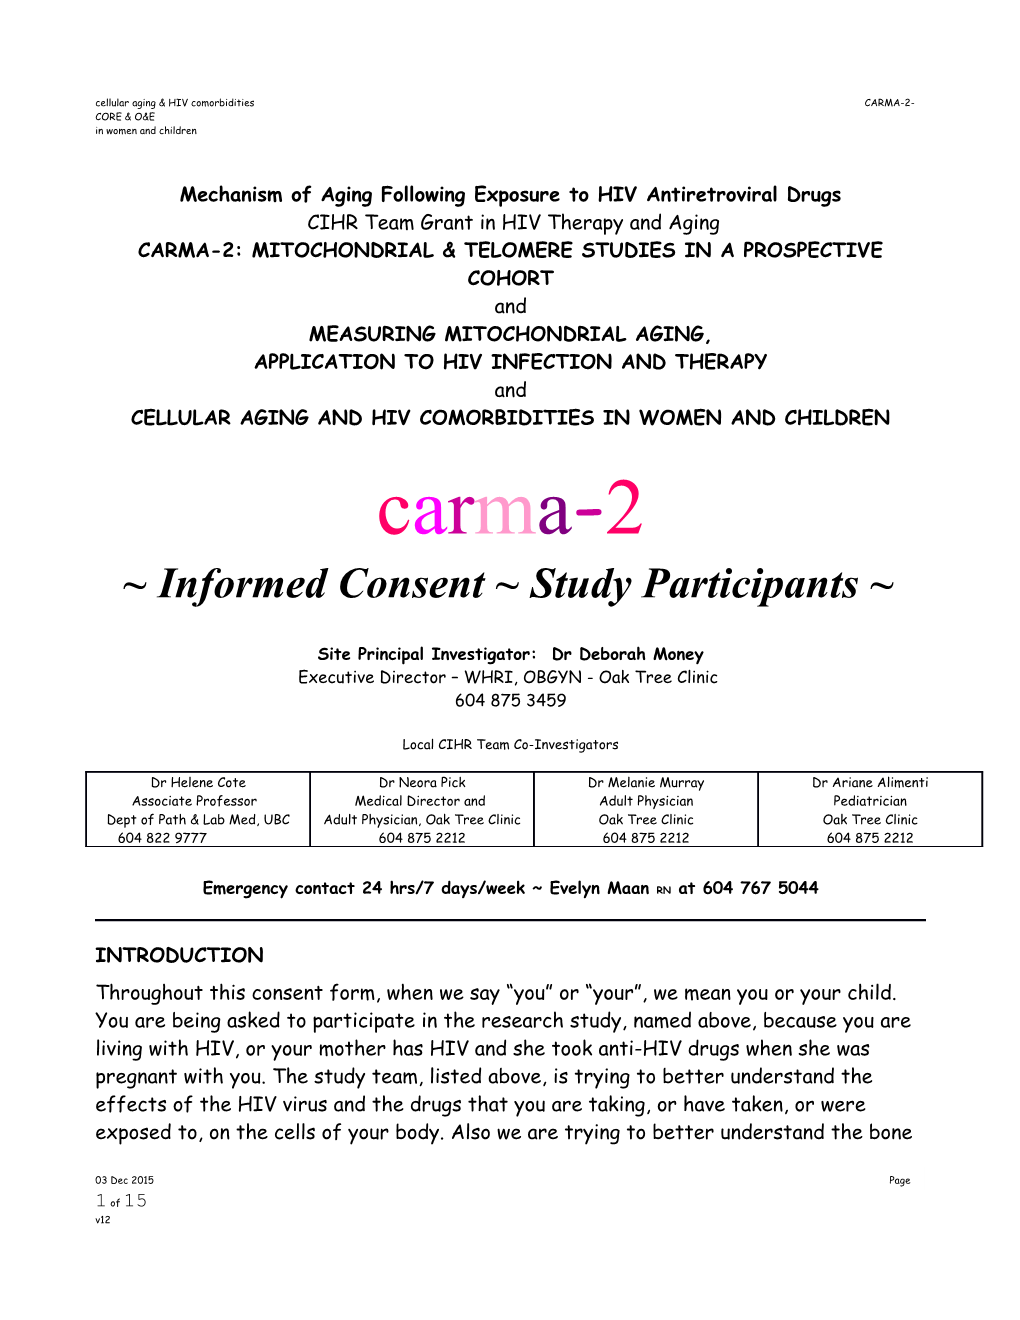 Cellular Aging & HIV Comorbidities CARMA-2-CORE & O&E